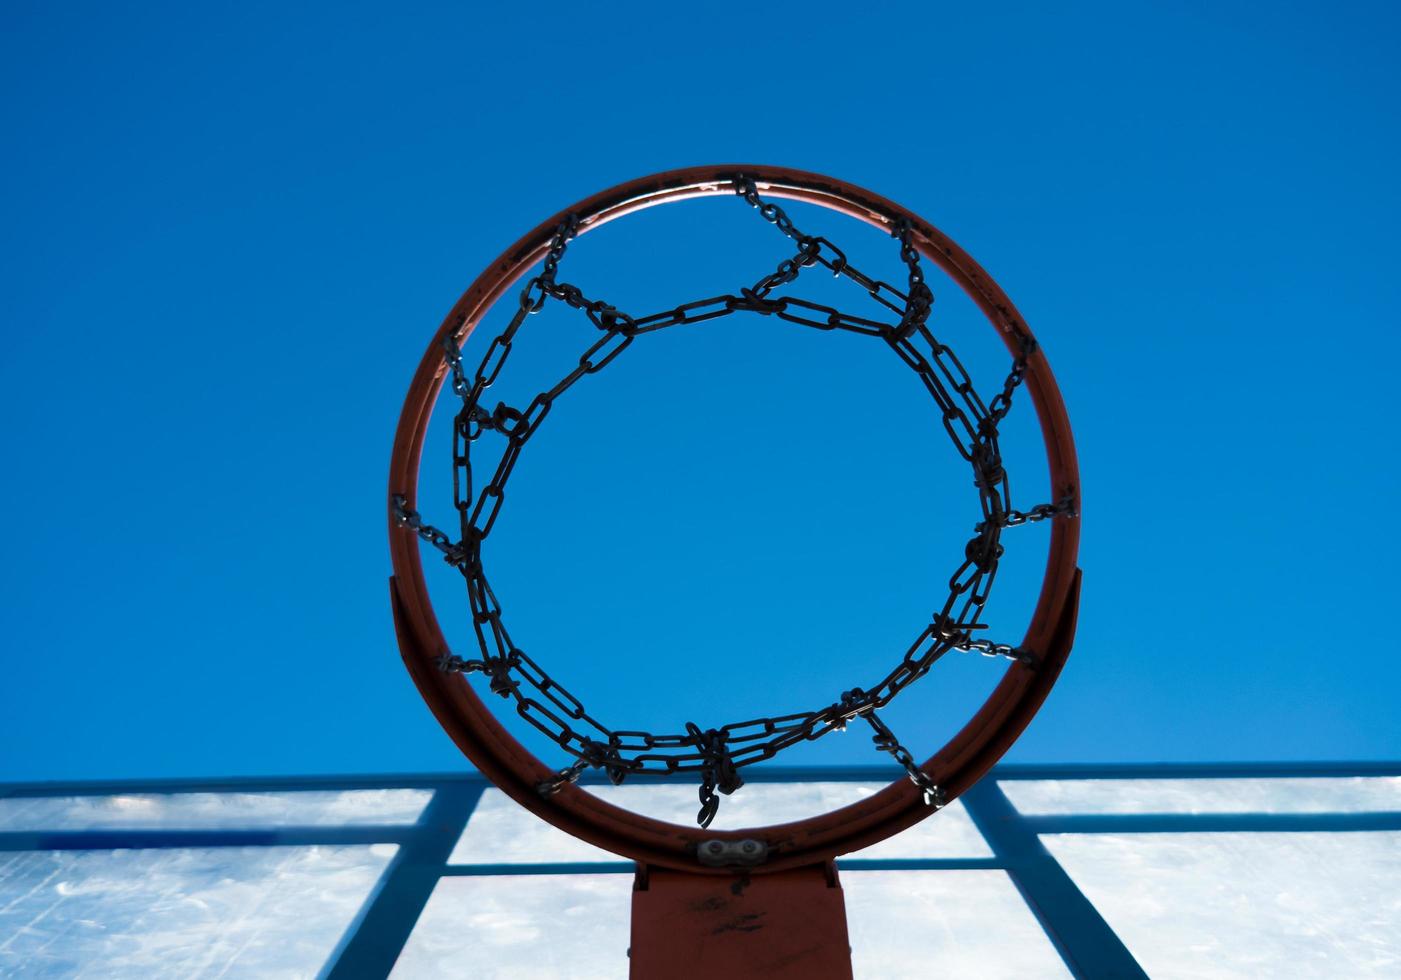 mirando a través de un aro de baloncesto foto